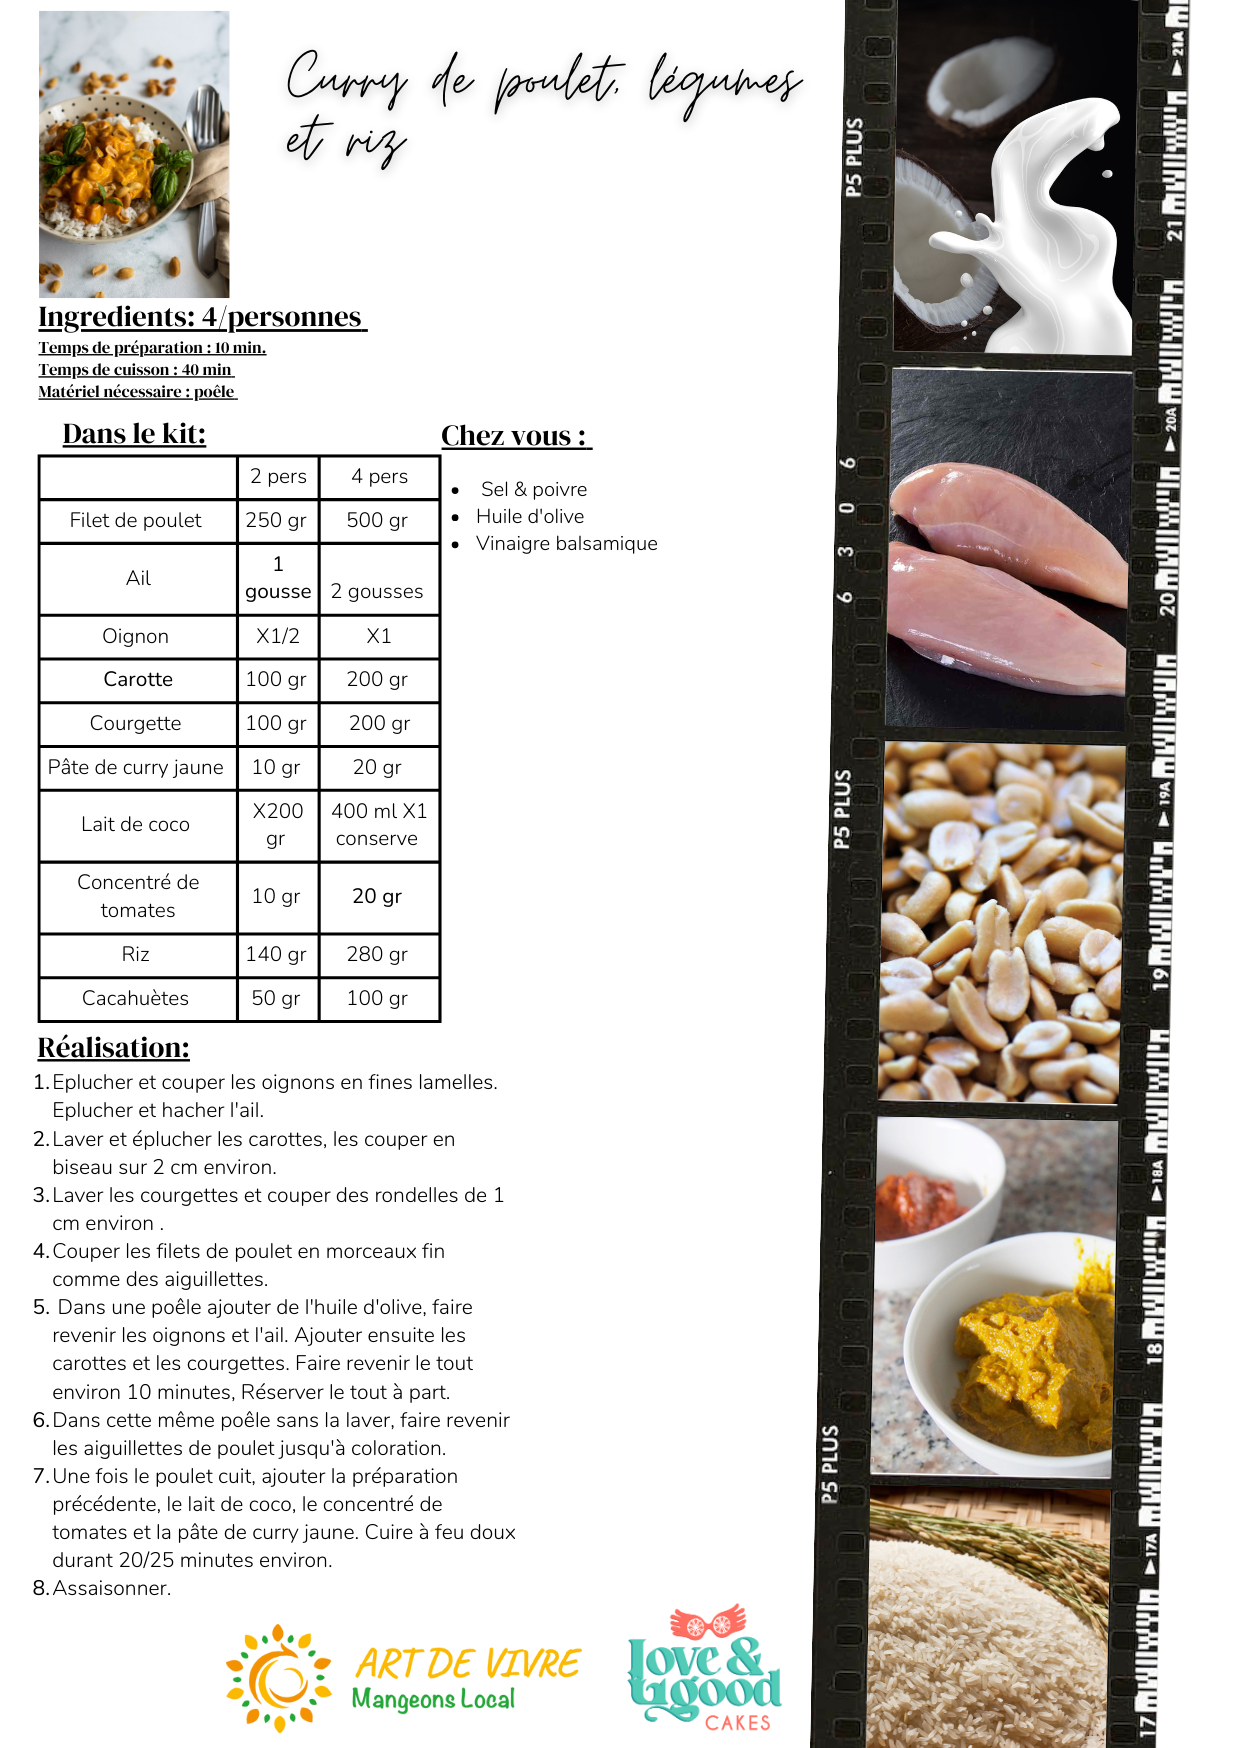 Curry de poulet, légumes et riz - 2 pers - 6,5€/pers